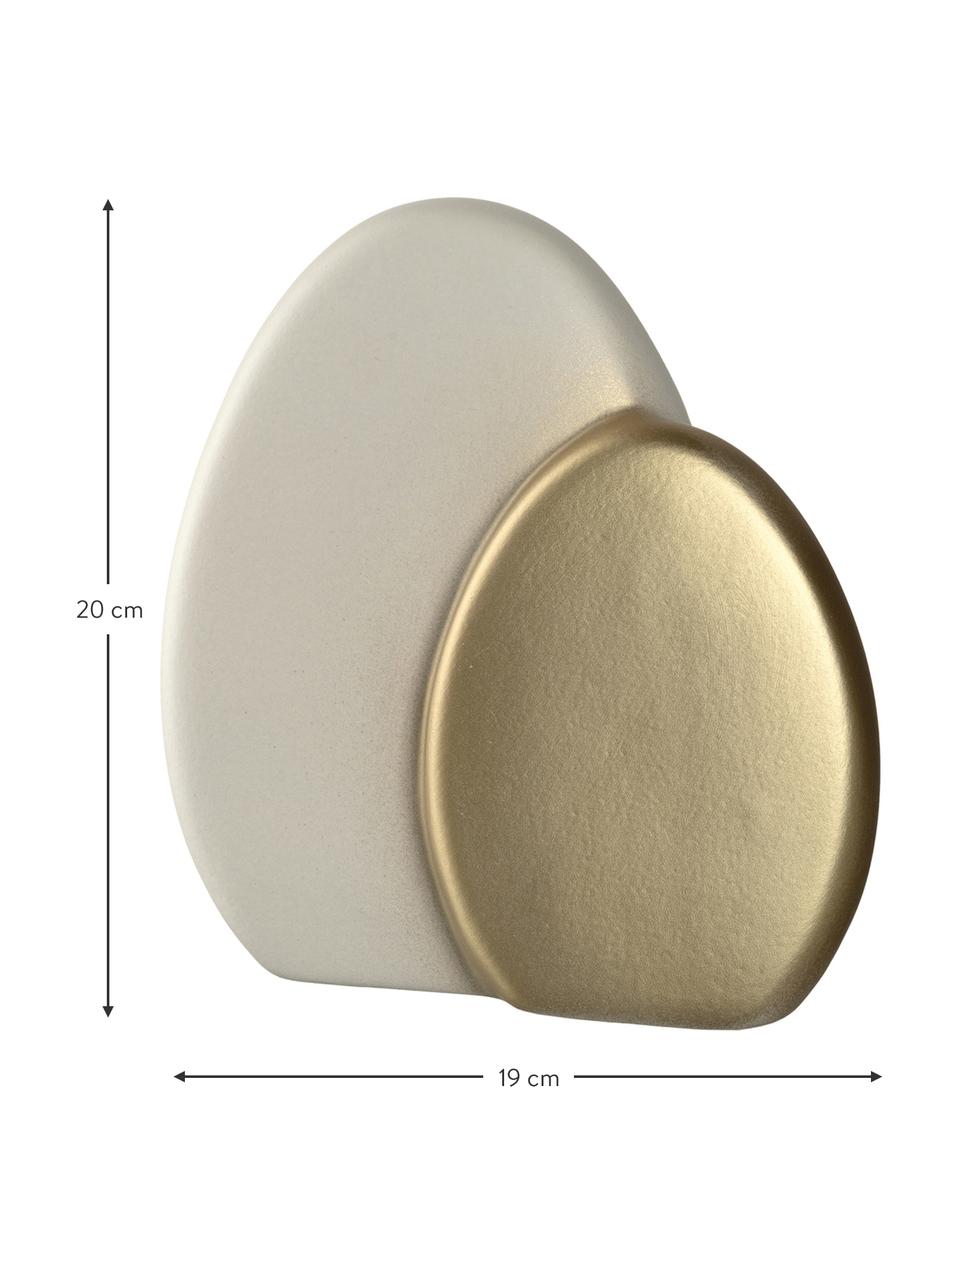 Deko-Objekt Doppelt-Osterei Pesaro aus Keramik in Weiß/Goldfarben, Keramik, Weiß, Goldfarben, B 19 x H 20 cm